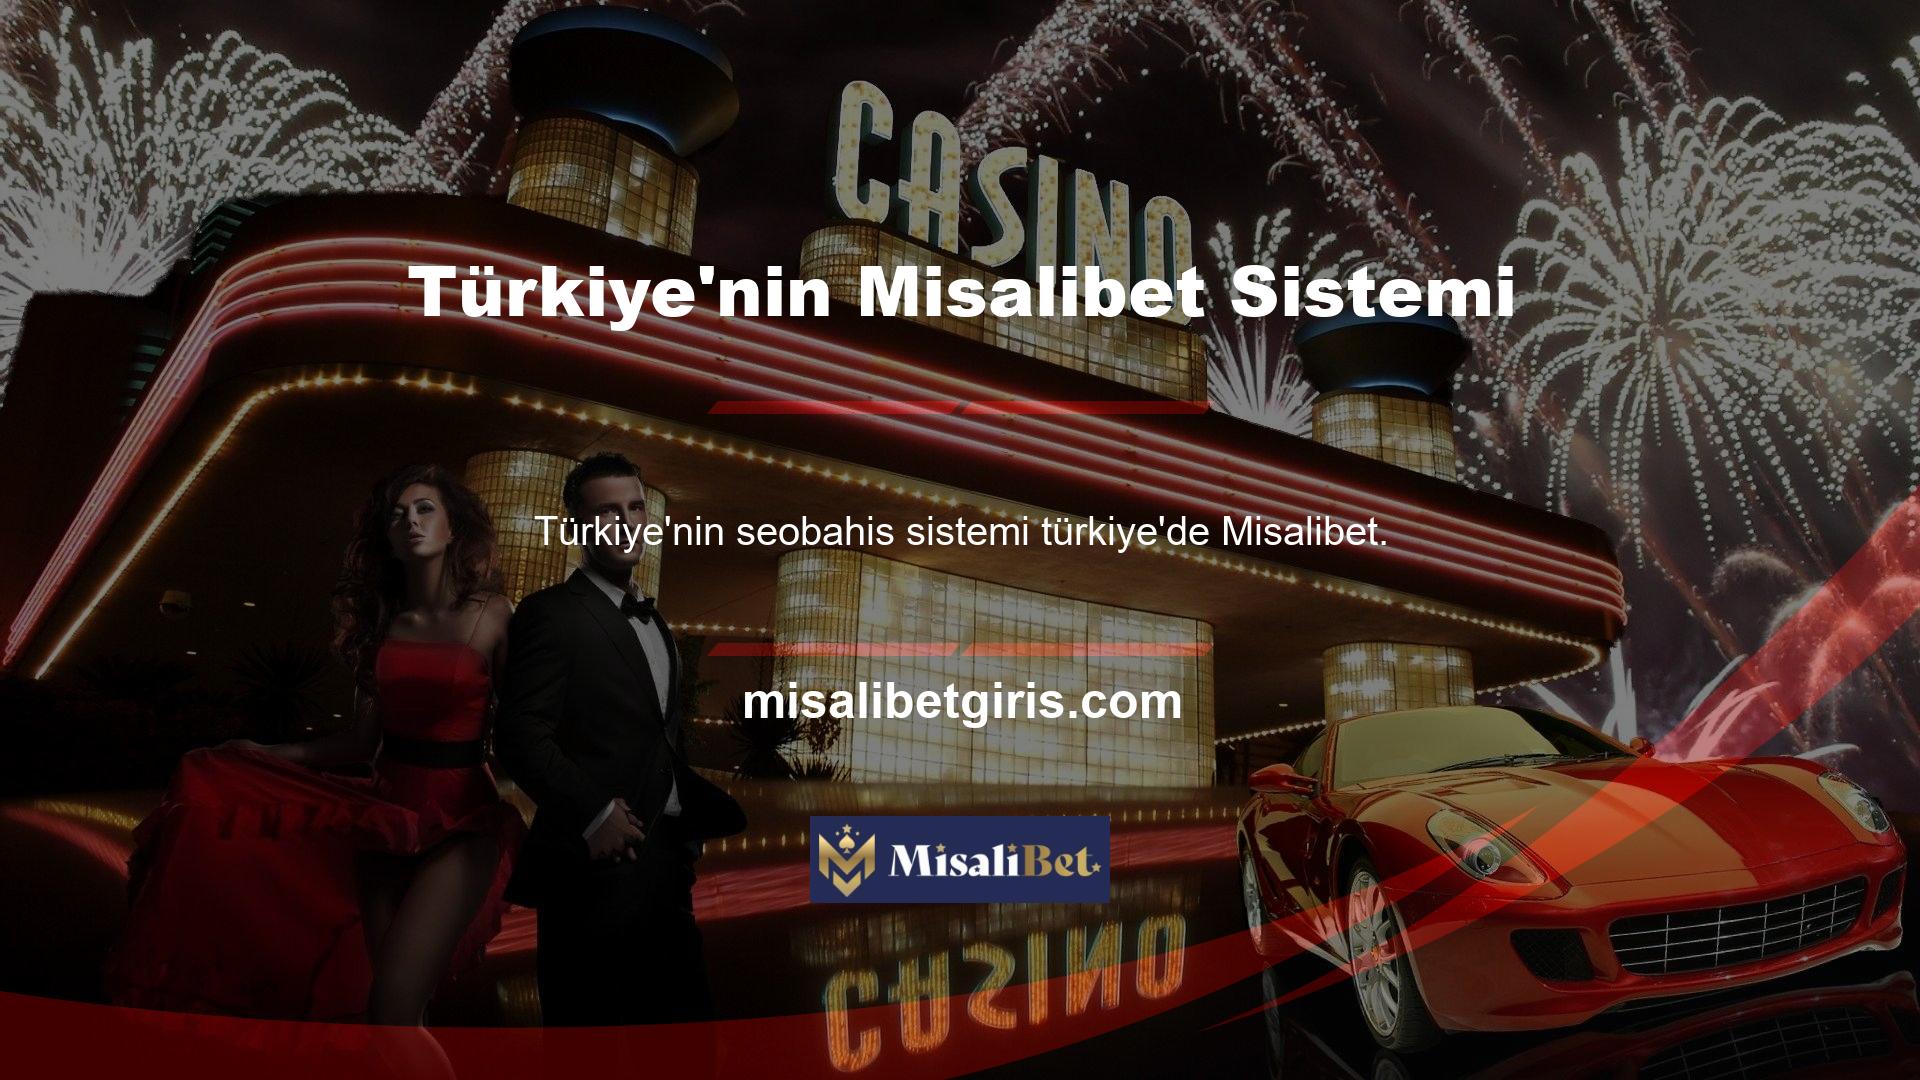 Lütfen Misalibet Turkey Casino ve kutunun açılması gibi özellikleri hakkında ayrıntılı bilgi verin